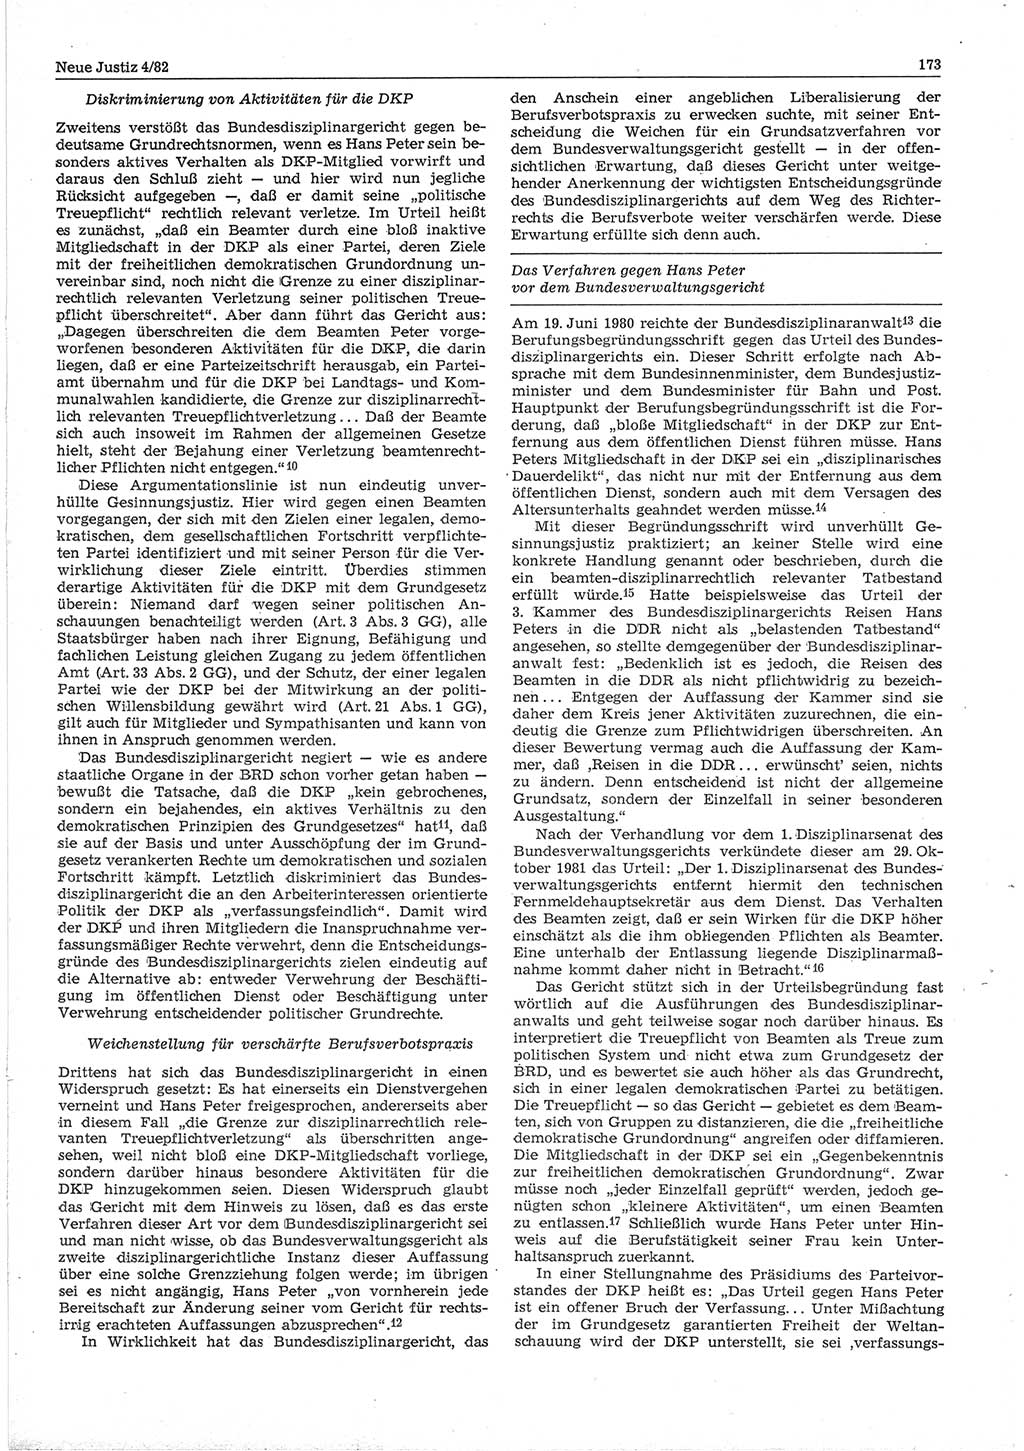 Neue Justiz (NJ), Zeitschrift für sozialistisches Recht und Gesetzlichkeit [Deutsche Demokratische Republik (DDR)], 36. Jahrgang 1982, Seite 173 (NJ DDR 1982, S. 173)